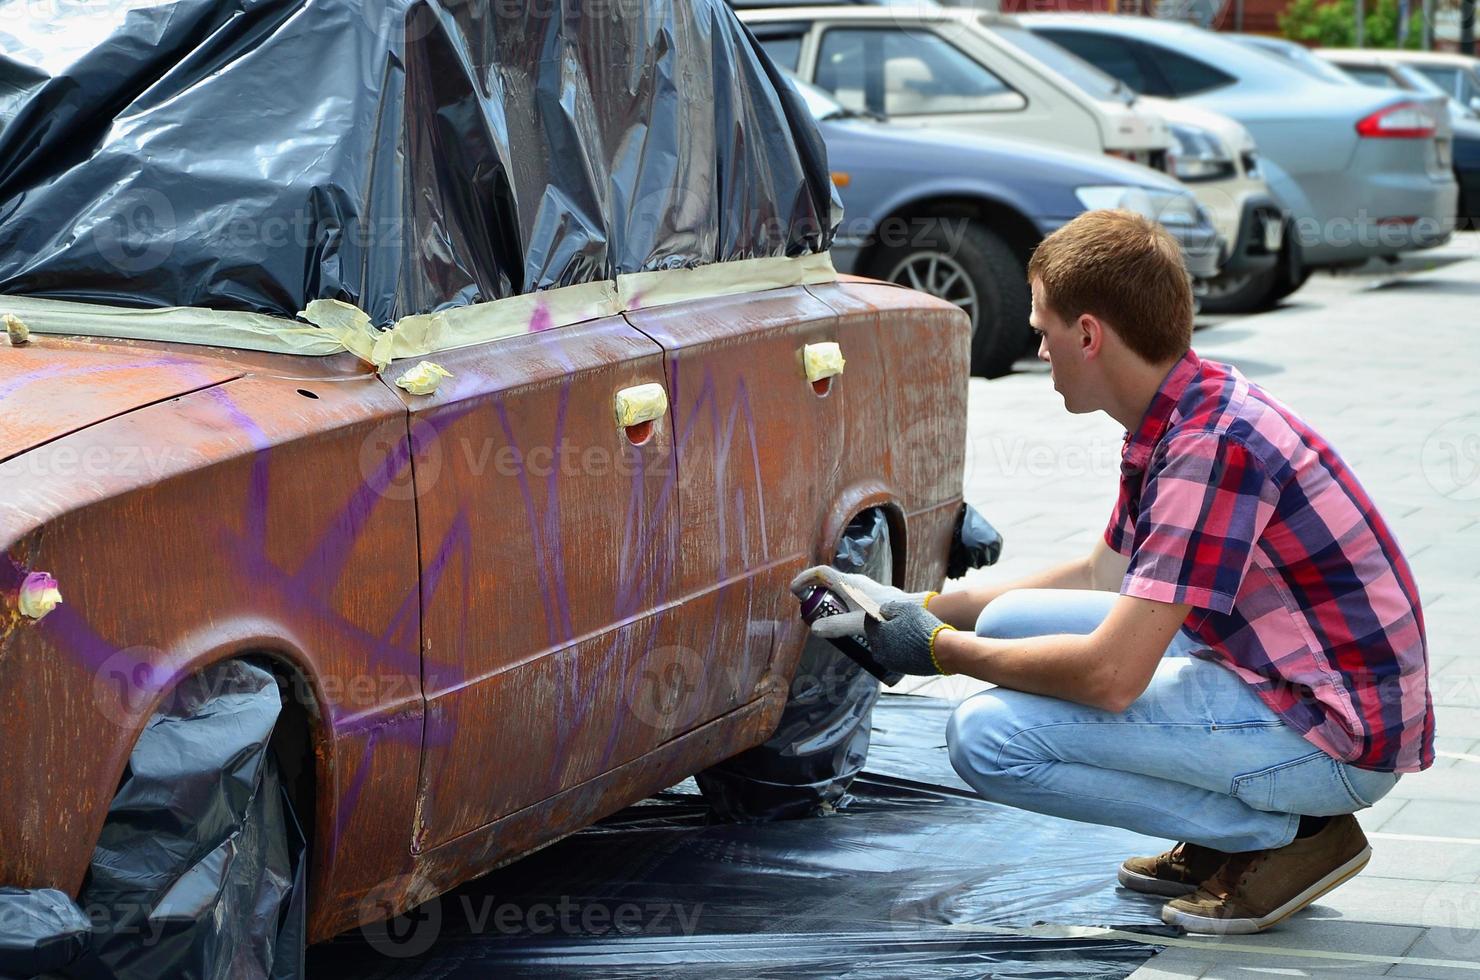 un joven grafitero pelirrojo pinta un nuevo grafiti colorido en el camión. foto del proceso de dibujo de un grafiti en el primer plano de un coche. el concepto de arte callejero y vandalismo ilegal